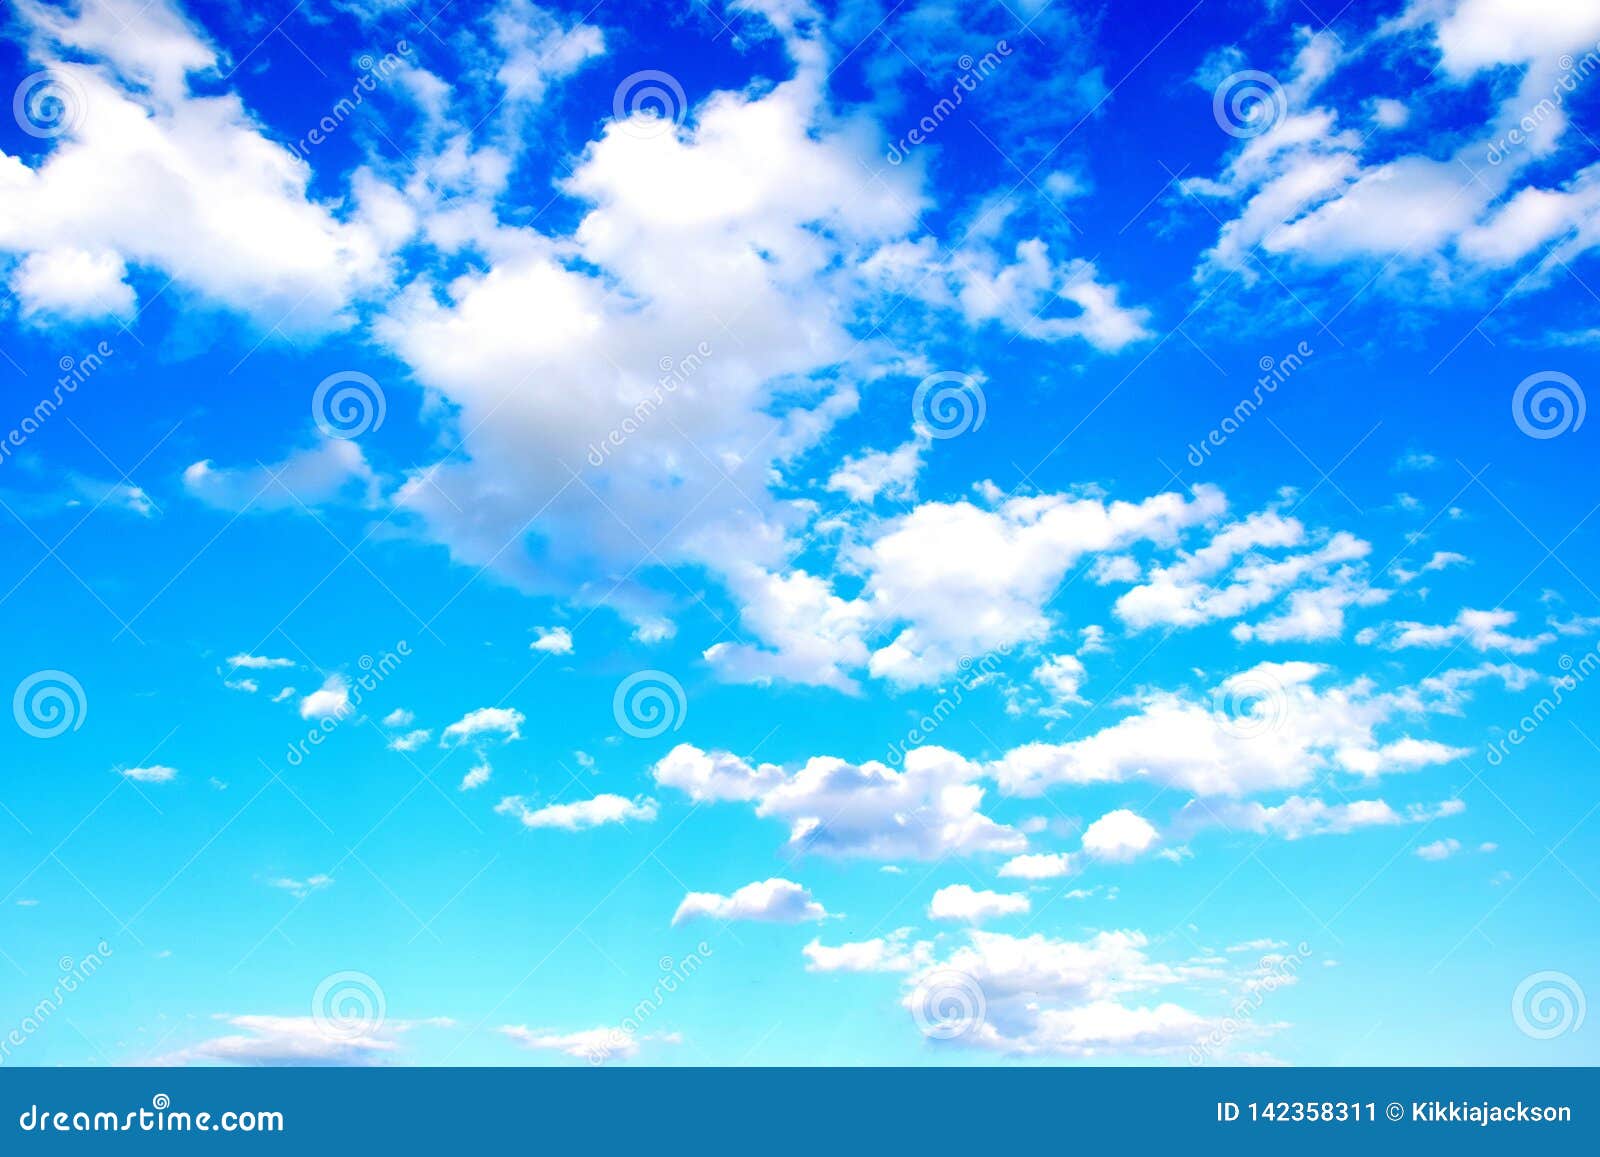 Hãy xem hình ảnh với nền trời xanh làm nền để cảm nhận sự rộng lớn và tĩnh lặng trong không gian mênh mông.